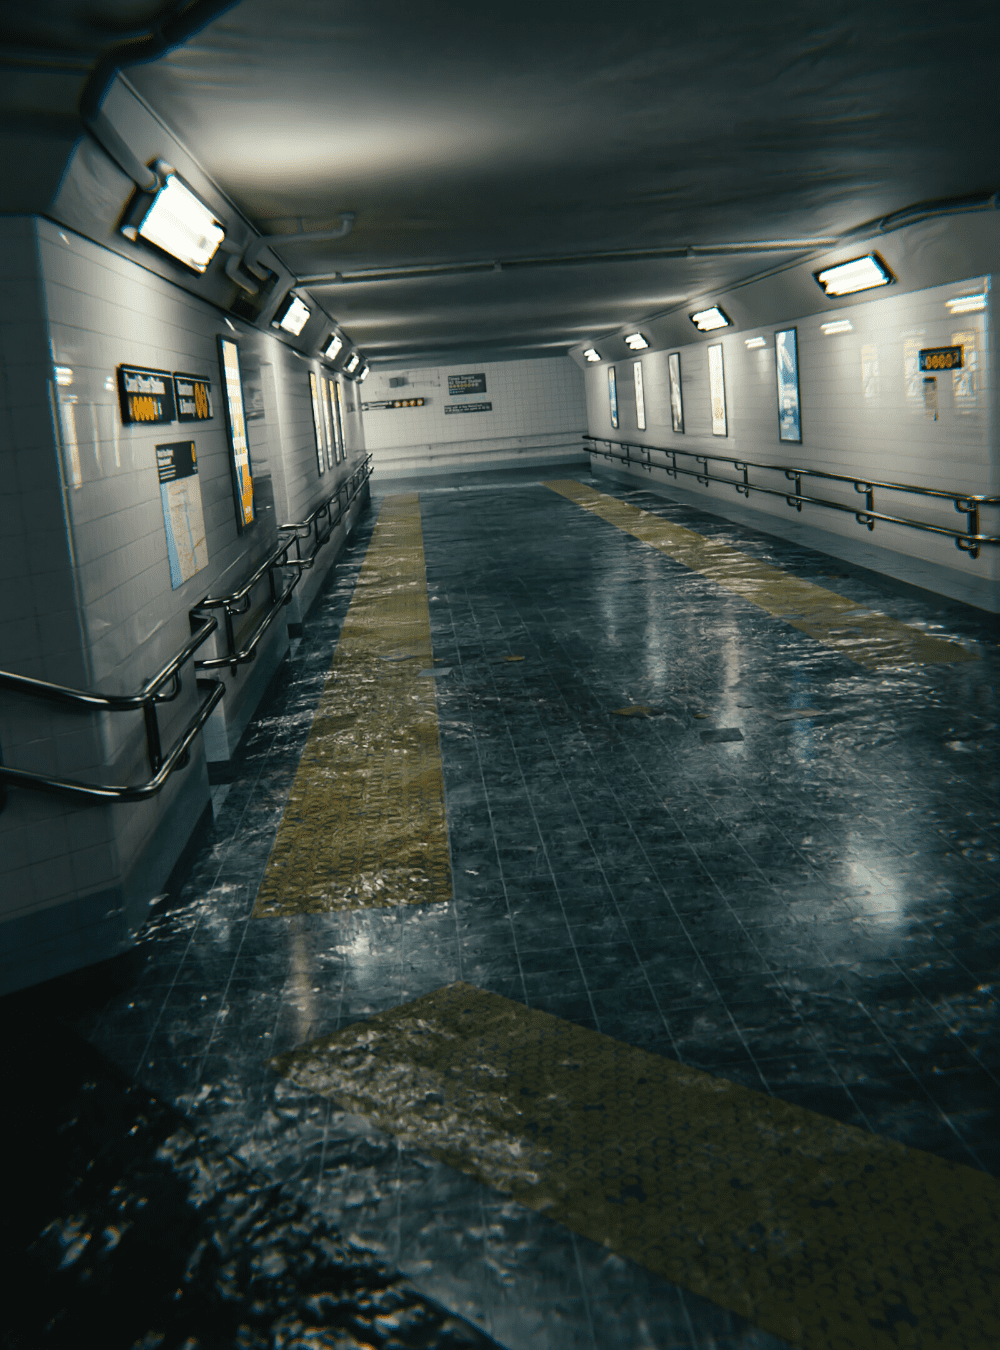 Photorealistic flooded subway